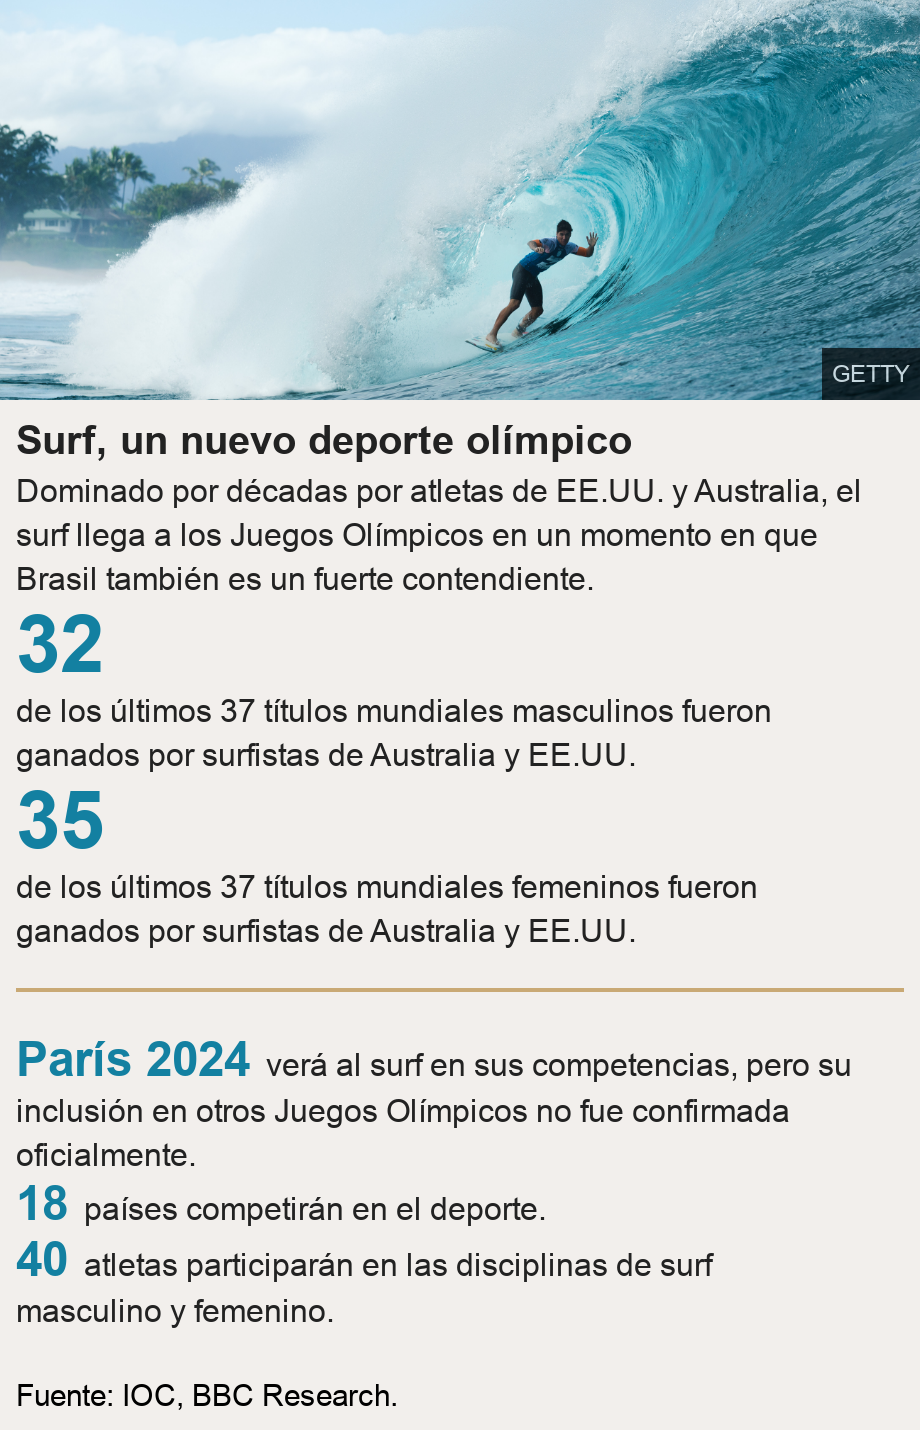 Surf, un nuevo deporte olímpico. Dominado por décadas por atletas de EE.UU. y Australia, el surf llega a los Juegos Olímpicos en un momento en que Brasil también es un fuerte contendiente. [ 32 de los últimos 37 títulos mundiales masculinos fueron ganados por surfistas de Australia y EE.UU. ],[ 35 de los últimos 37 títulos mundiales femeninos fueron ganados por surfistas de Australia y EE.UU. ] [ París 2024 verá al surf en sus competencias, pero su inclusión en otros Juegos Olímpicos no fue confirmada oficialmente. ],[ 18 países competirán en el deporte. ],[ 40 atletas participarán en las disciplinas de surf masculino y femenino. ], Source: Fuente: IOC, BBC Research., Image: Gabriel Medina of Brasil won his maiden ASP World Title at the Billabong Pipe Masters in Memory of Andy Irons at Pipeline. 19 December, 2014 in North Shore, Hawaii.